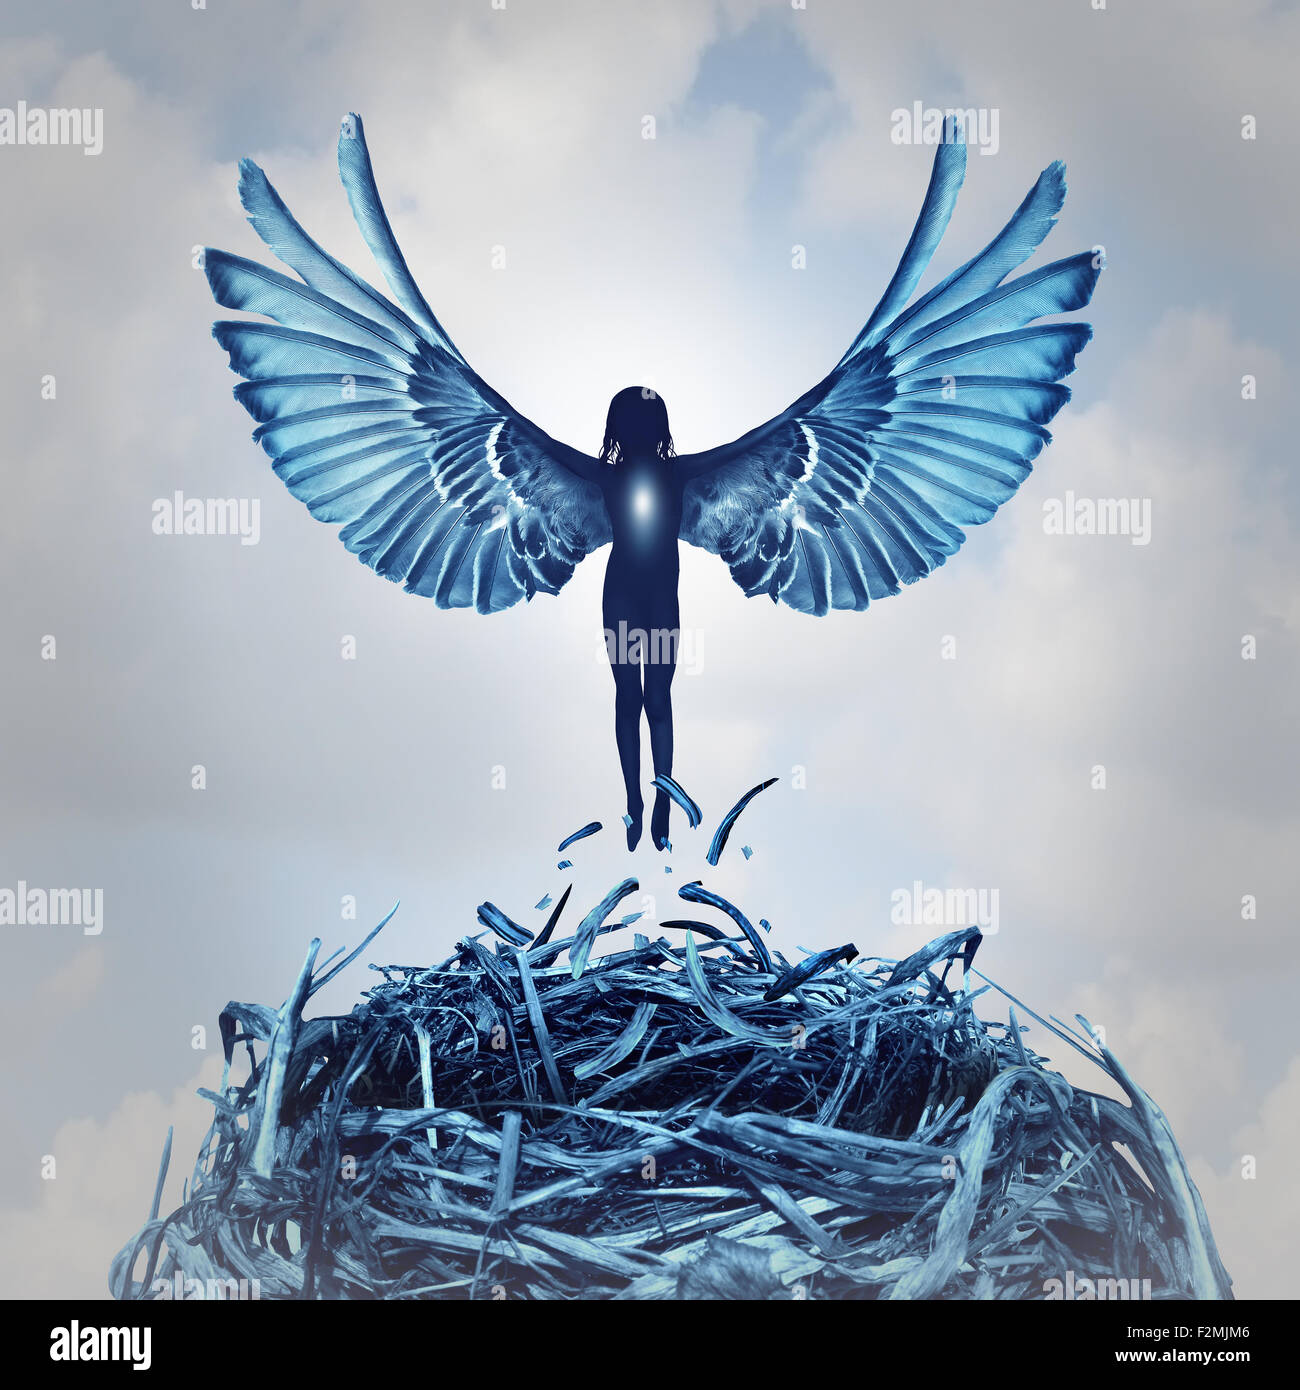 Angel concept et la métaphore de l'ange avec ailes ouvertes sortant d'un nid dans les nuages comme un symbole d'espoir et les aspirations de la vie et d'accéder à la réalisation d'apprentissage personnel. Banque D'Images